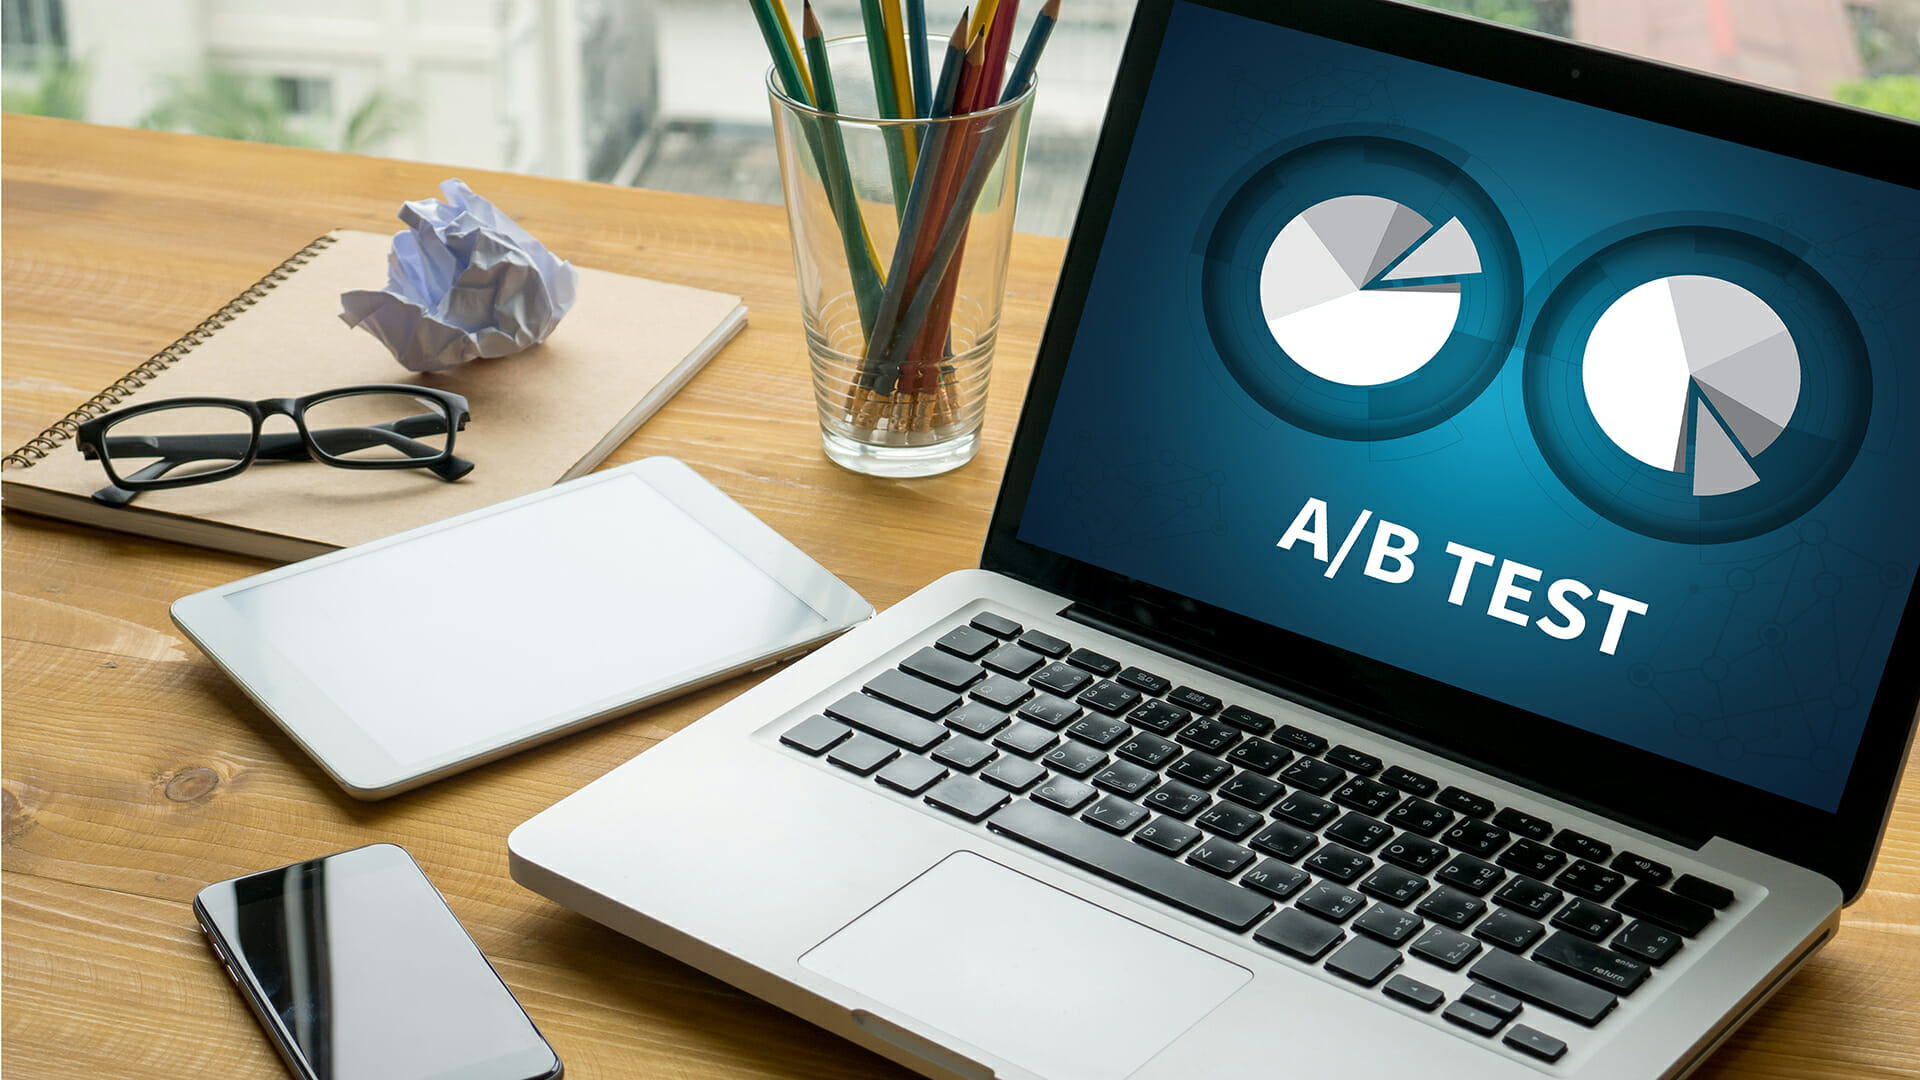 Is A/B testing dead?